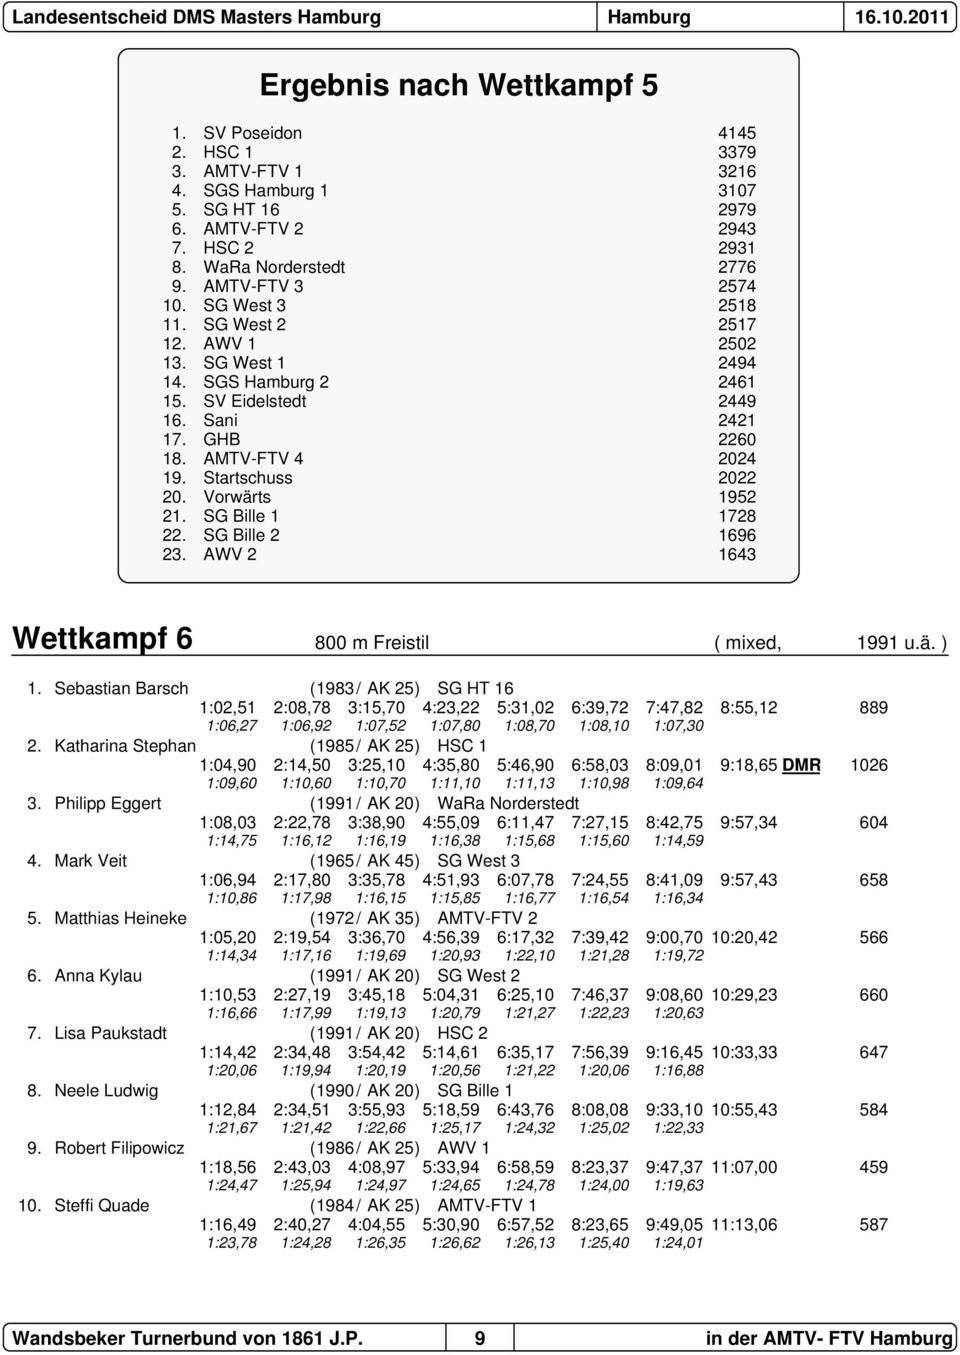 Vorwärts 1952 21. SG Bille 1 1728 22. SG Bille 2 1696 23. AWV 2 1643 Wettkampf 6 800 m Freistil ( mixed, 1991 u.ä. ) 1.